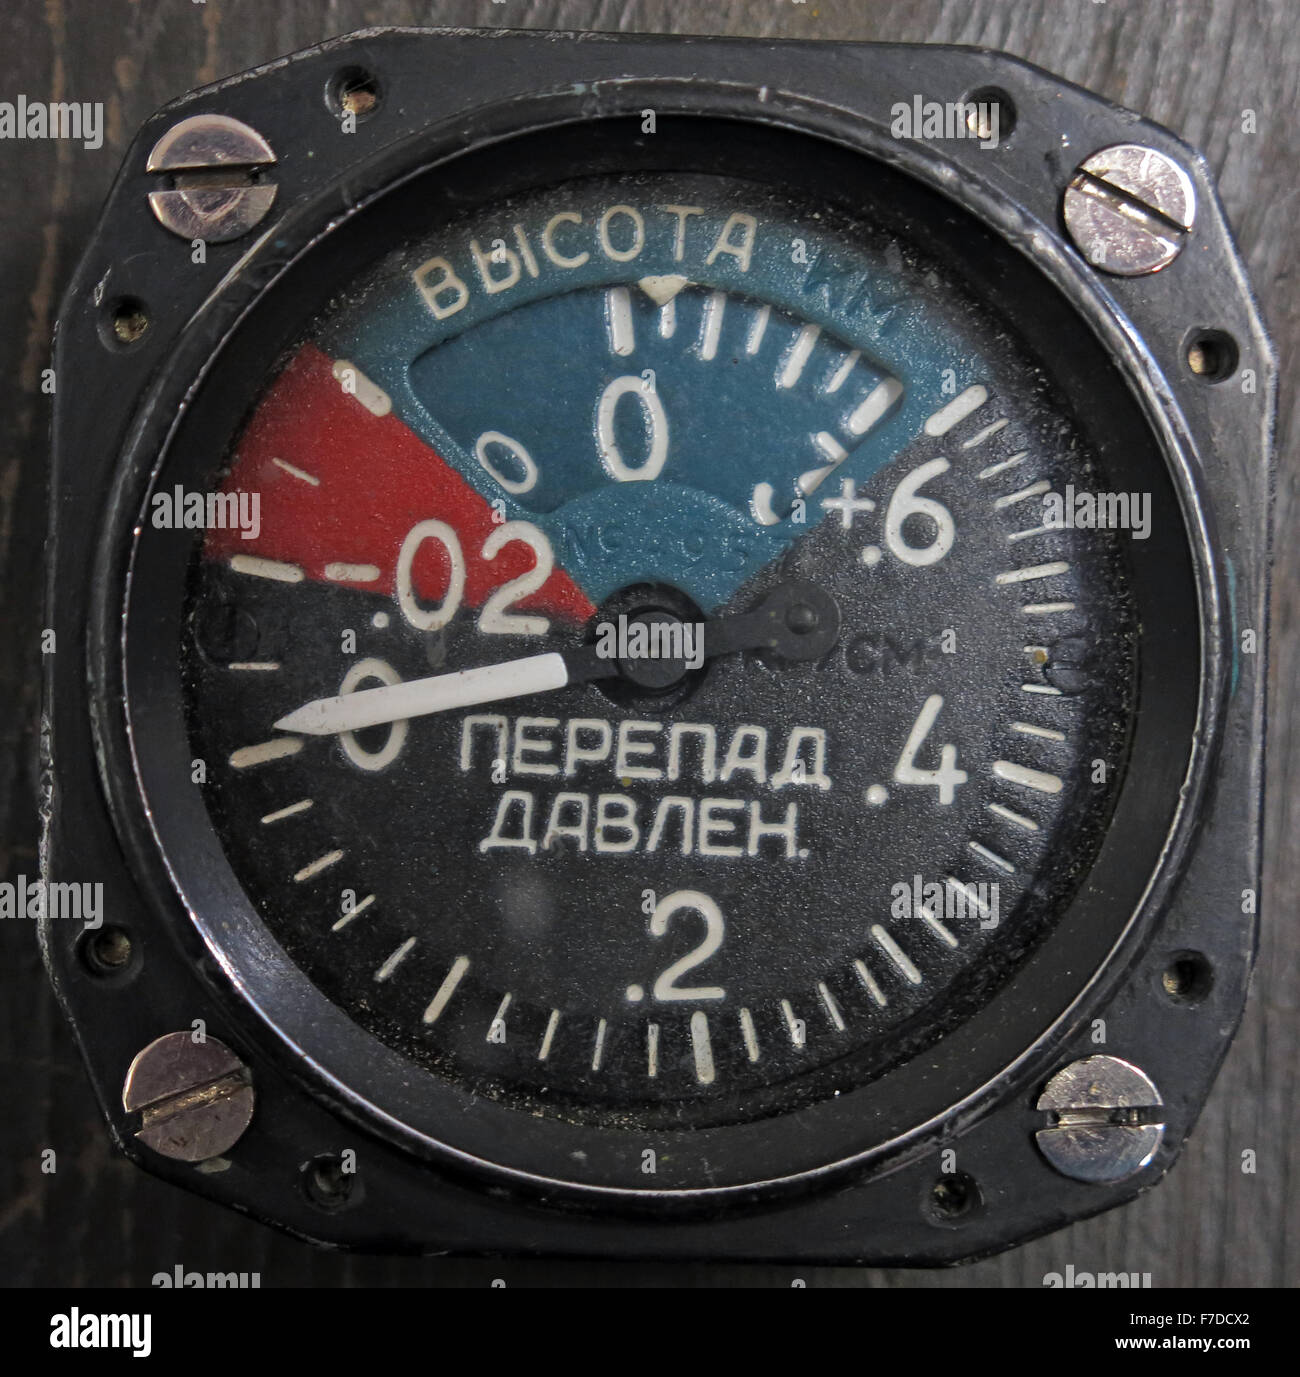 Un avion russe avion comparateurs à cadran à partir de matériel de l'URSS Banque D'Images